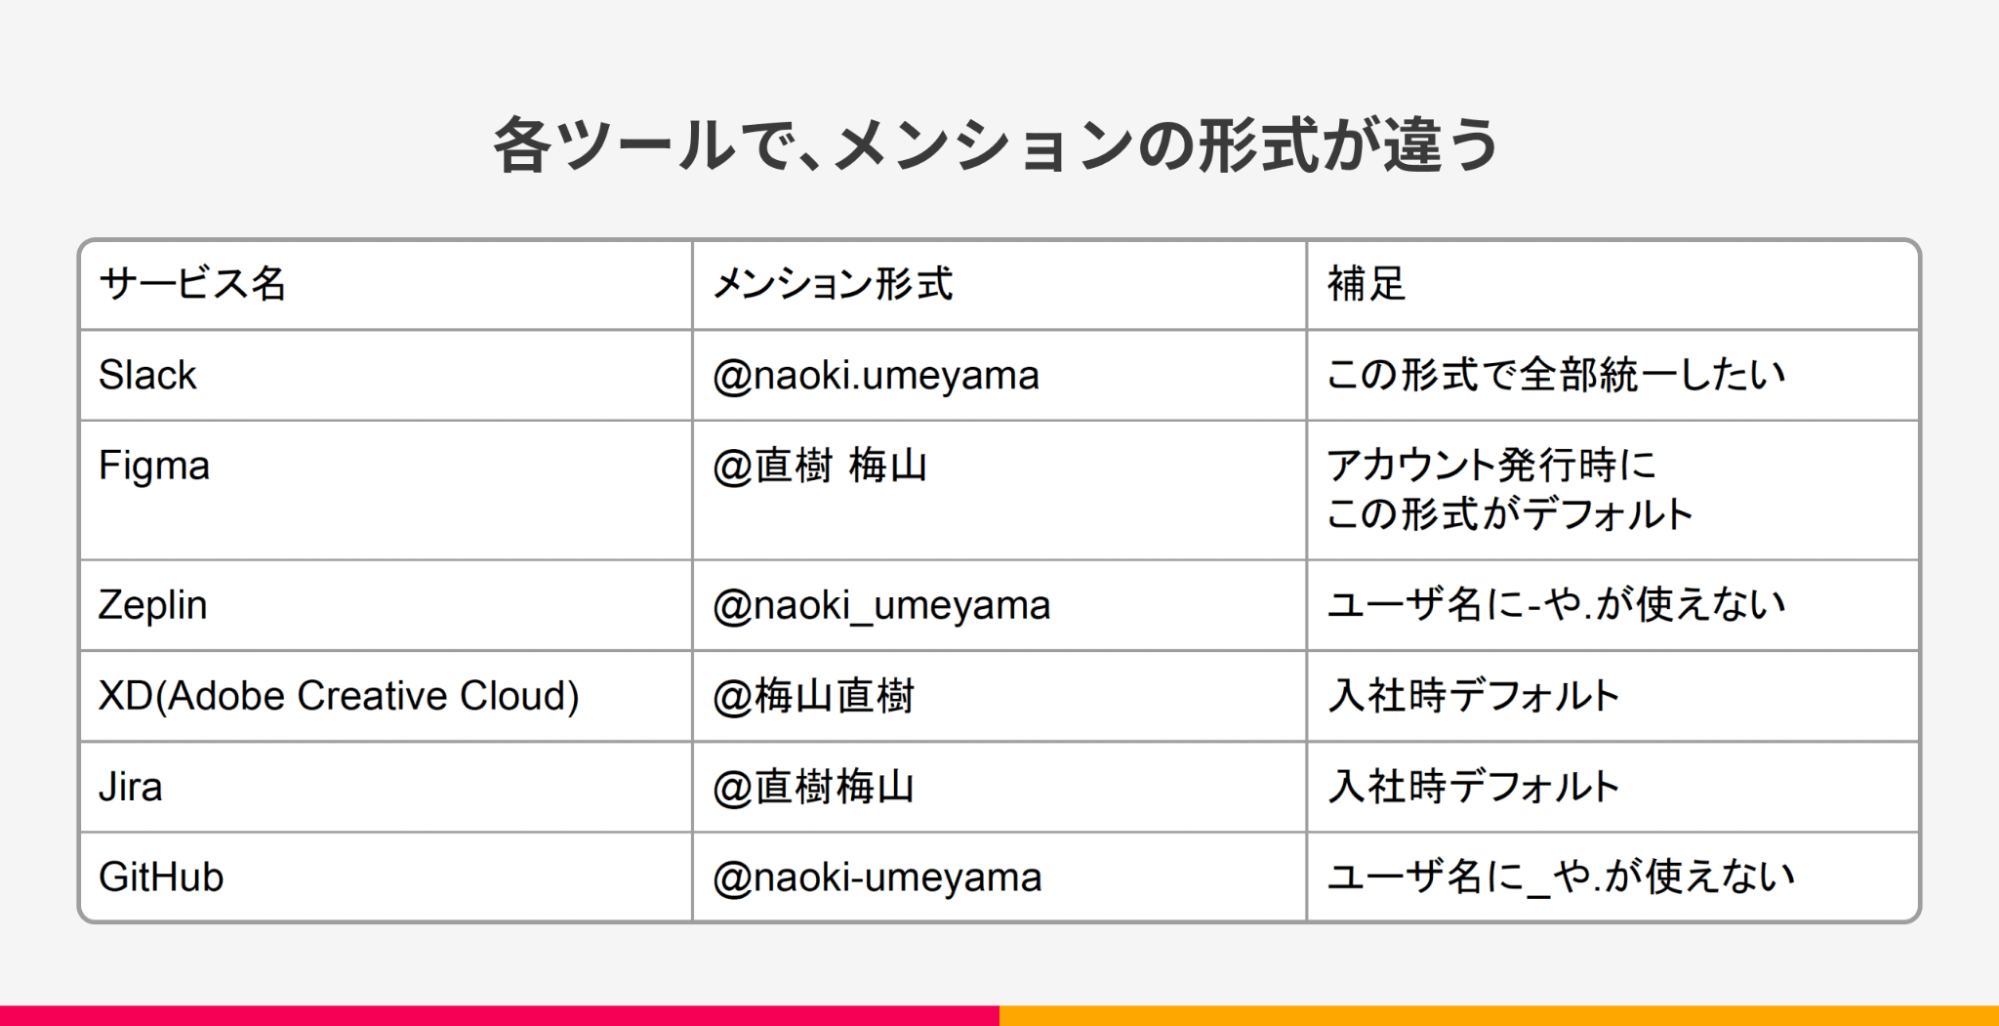 例えば、Slackでは@naoki.umeyamaだが、Figmaでは@梅山直樹のようにメンション形式が異なる